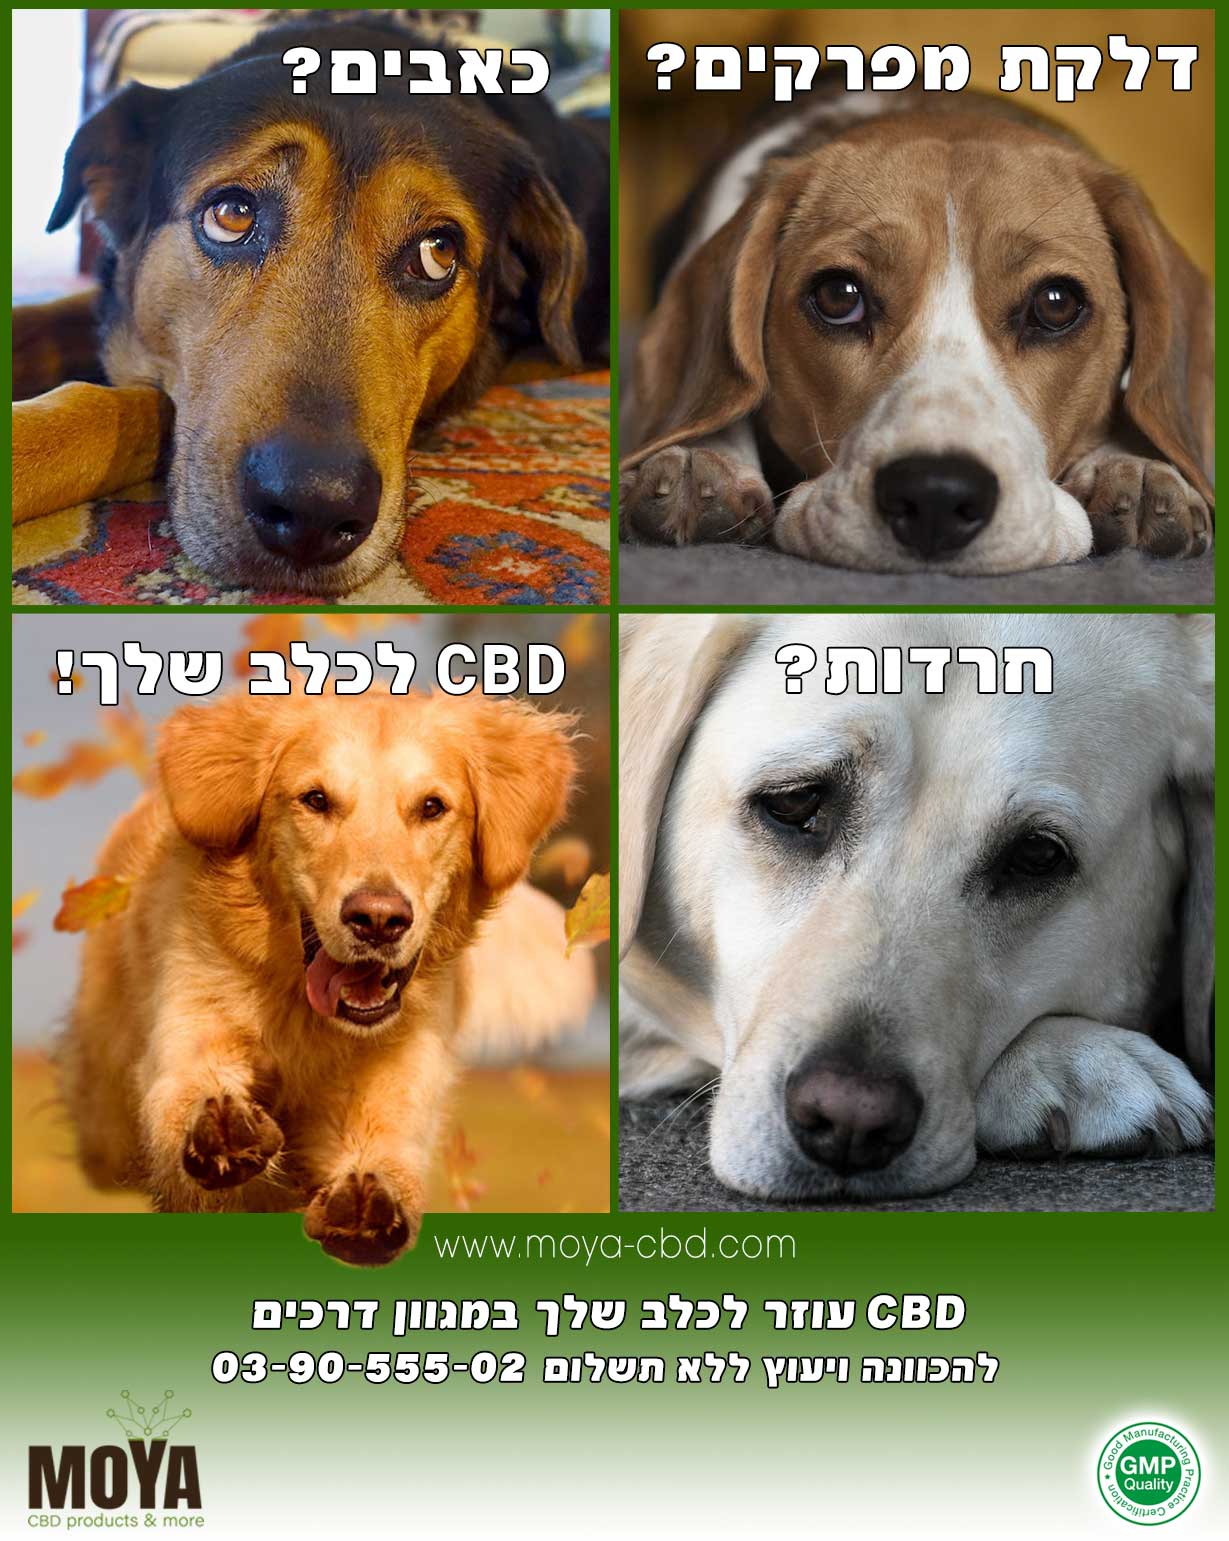 CBD עוזר לכלב שלך במגוון דרכים